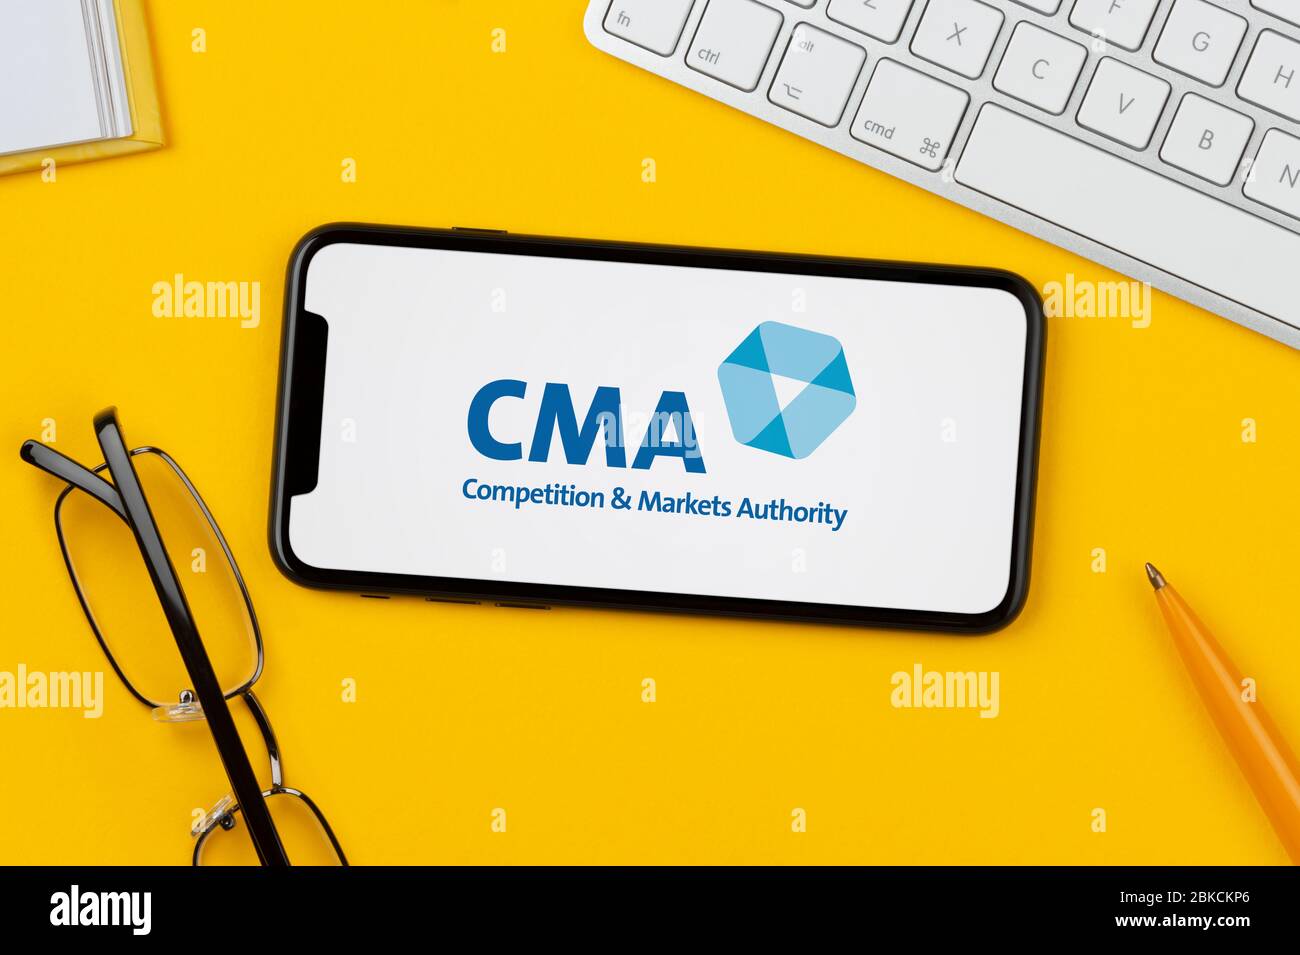 Uno smartphone con il logo CMA (Competition and Markets Authority) si trova su uno sfondo giallo (solo per uso editoriale). Foto Stock